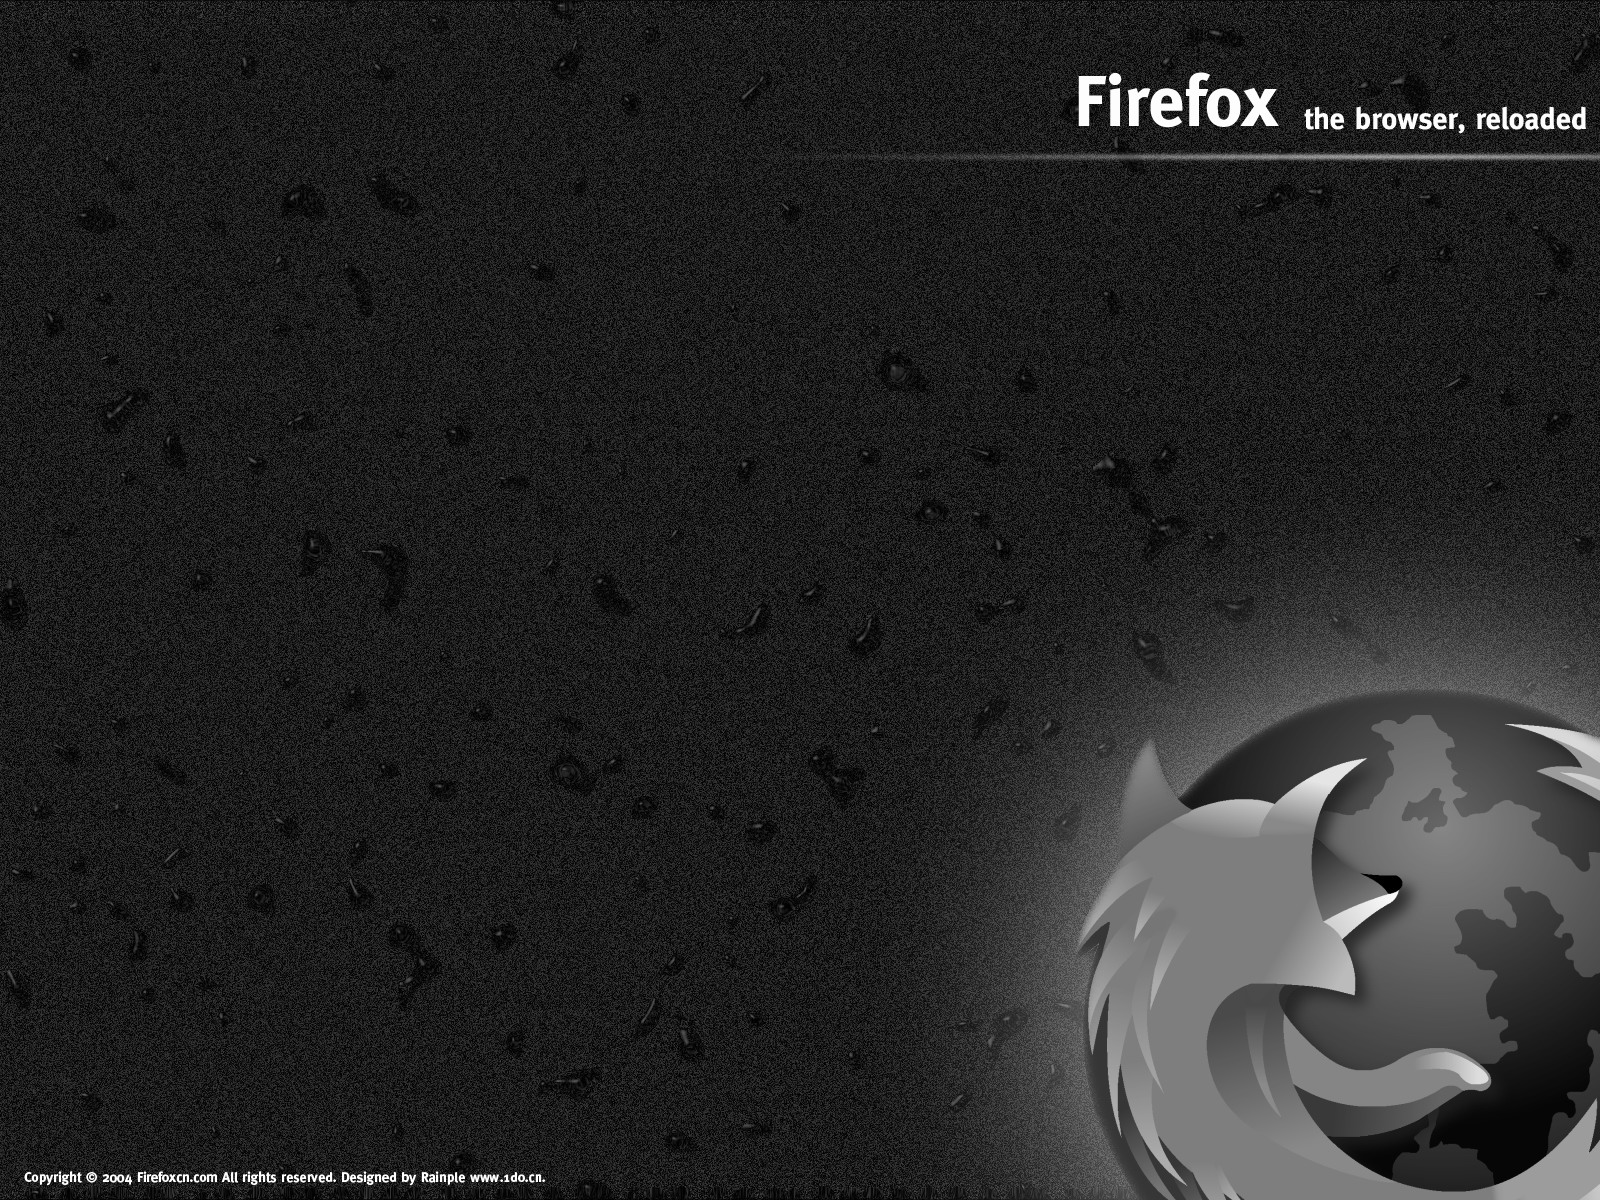 壁纸1600x1200Firefox桌面壁纸 壁纸19壁纸 Firefox桌面壁纸壁纸 Firefox桌面壁纸图片 Firefox桌面壁纸素材 系统壁纸 系统图库 系统图片素材桌面壁纸